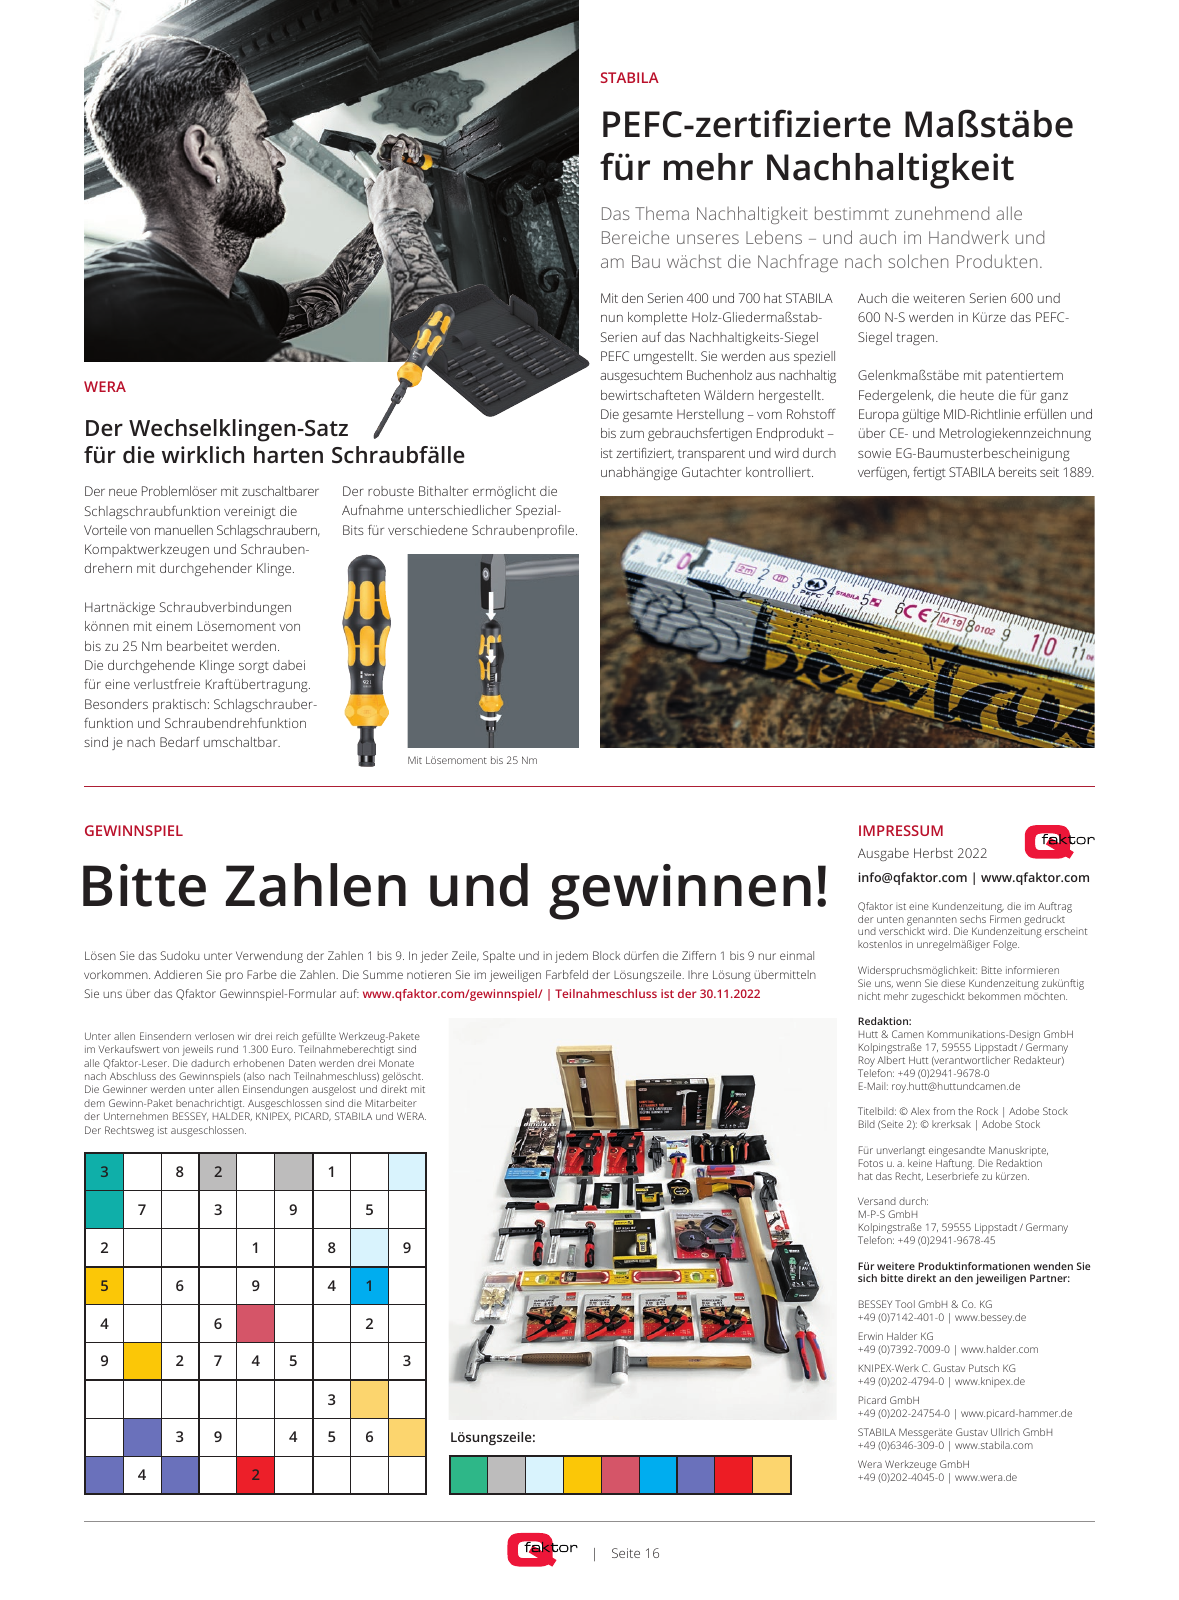 Vorschau Qfaktor Zeitung – Ausgabe Herbst 2022 Seite 16